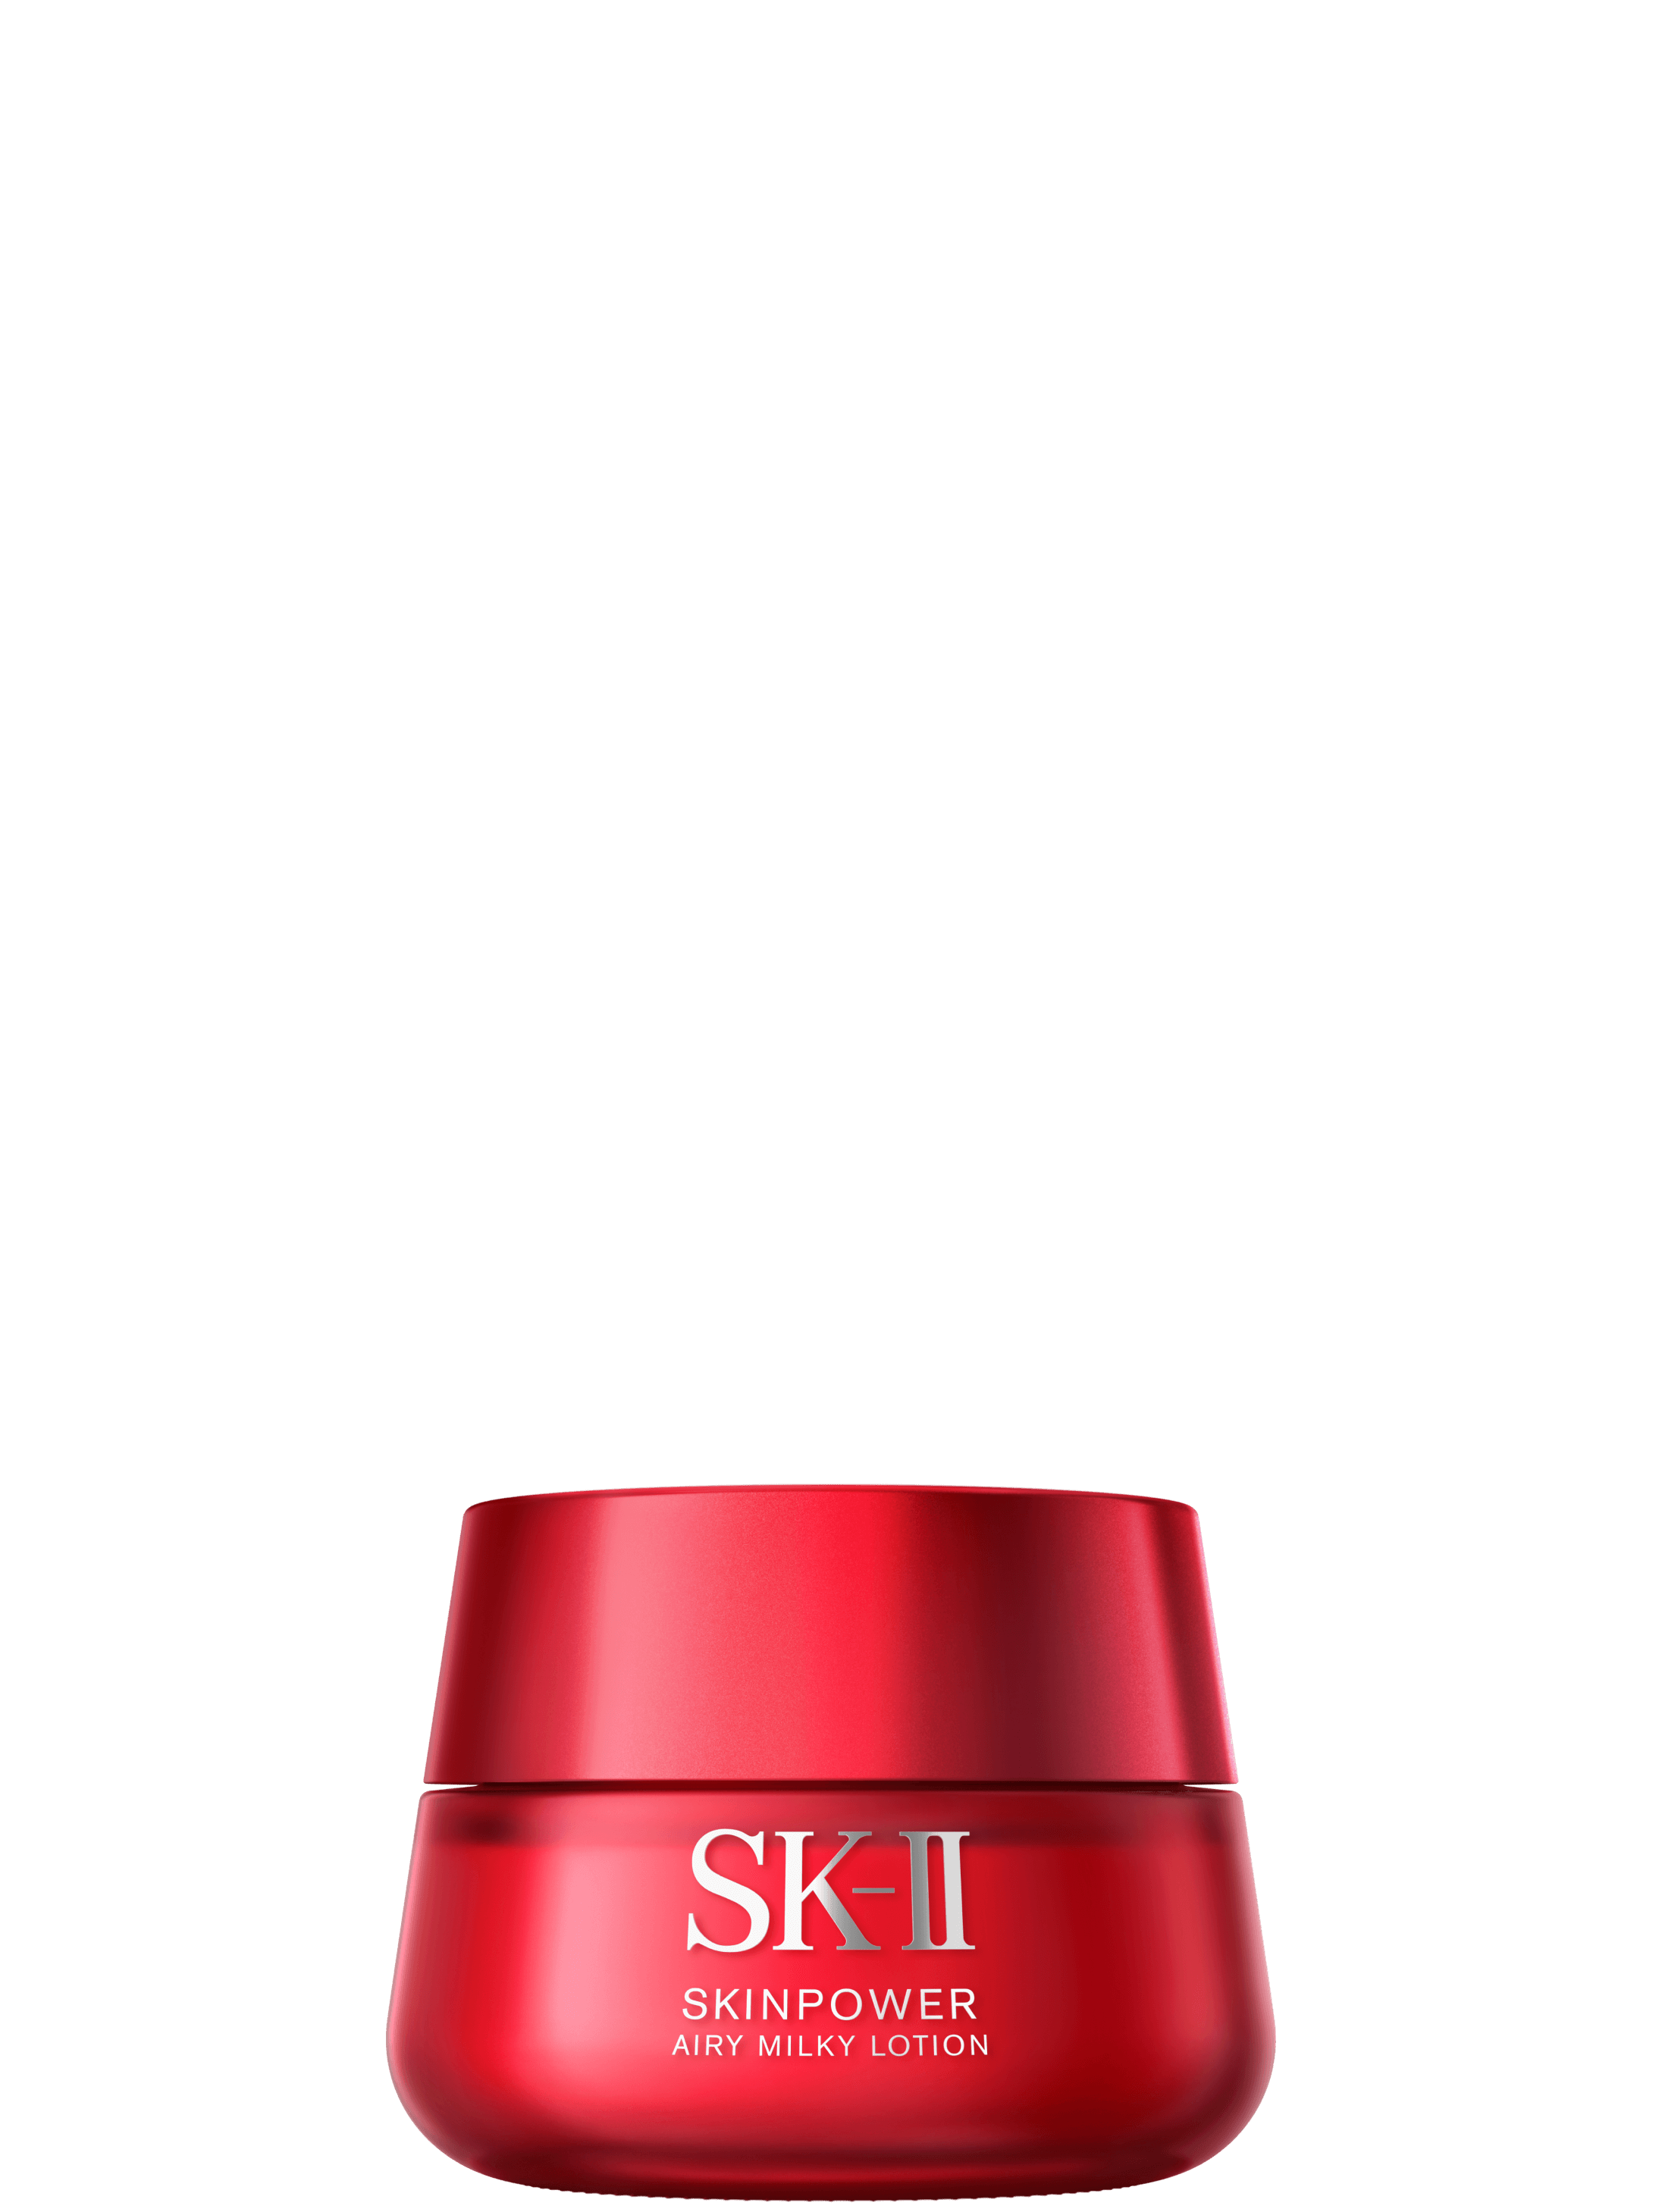 スキンパワー エアリー | 軽い感触の保湿美容乳液 | SK-II (SK2 